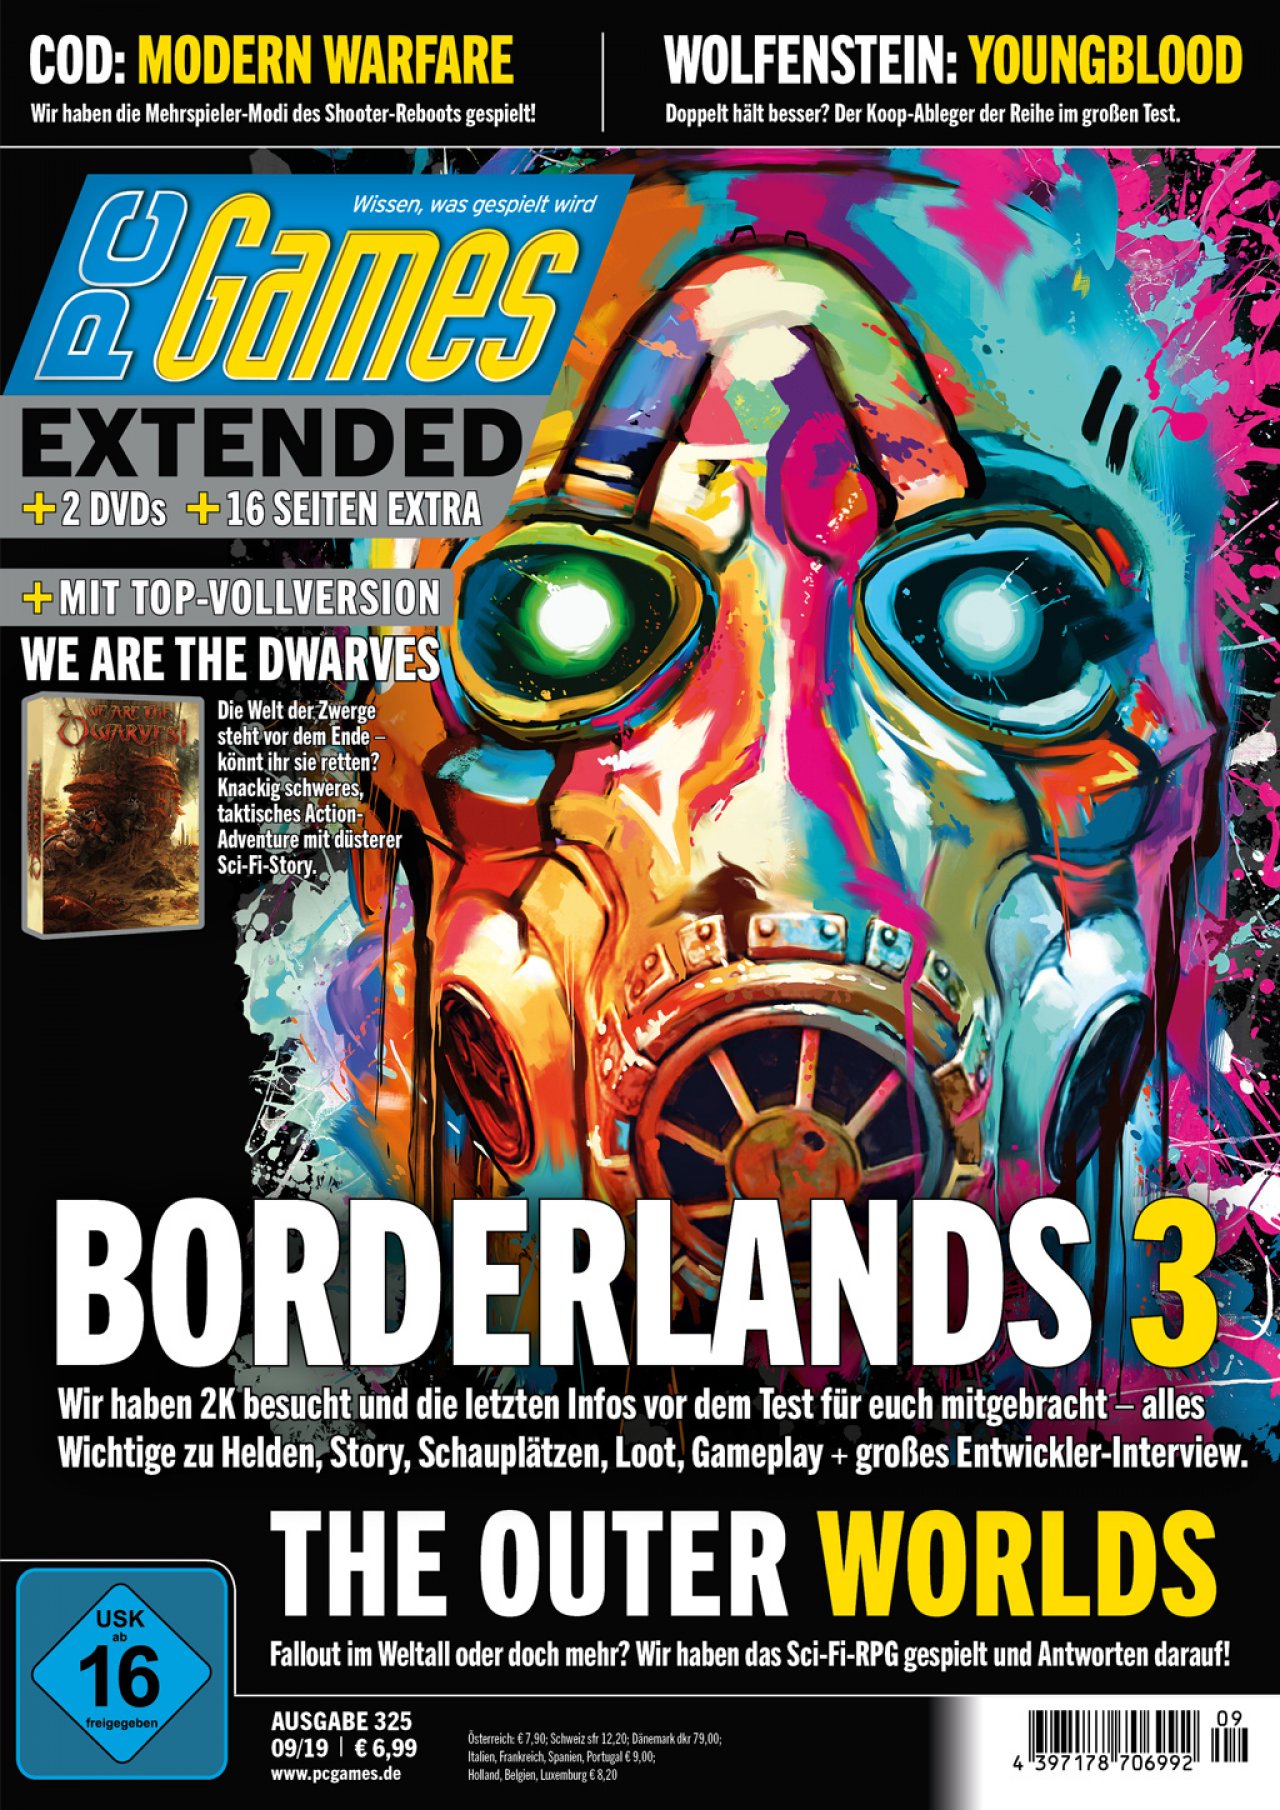 Borderlands gifs videospiele bilder üppig Bild Bild